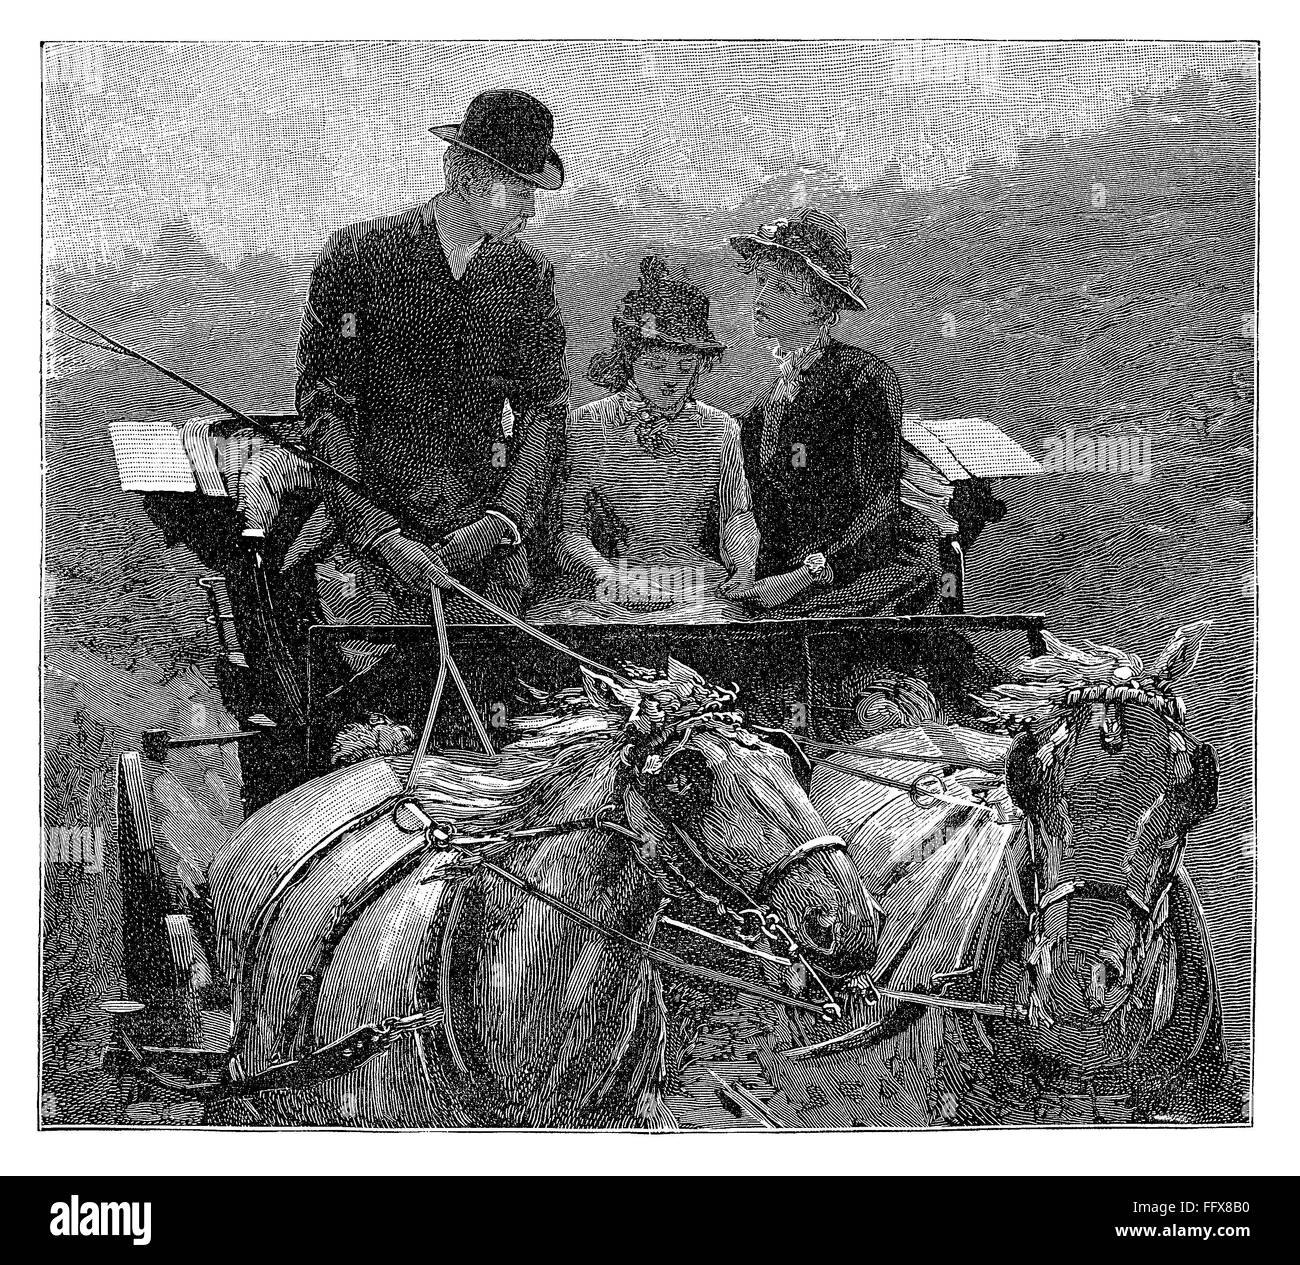 Schwarz / weiß-Gravur von einem Wagen und zwei Pferde, getrieben von einem viktorianischen Gentleman mit zwei Dame Passagiere. Stockfoto